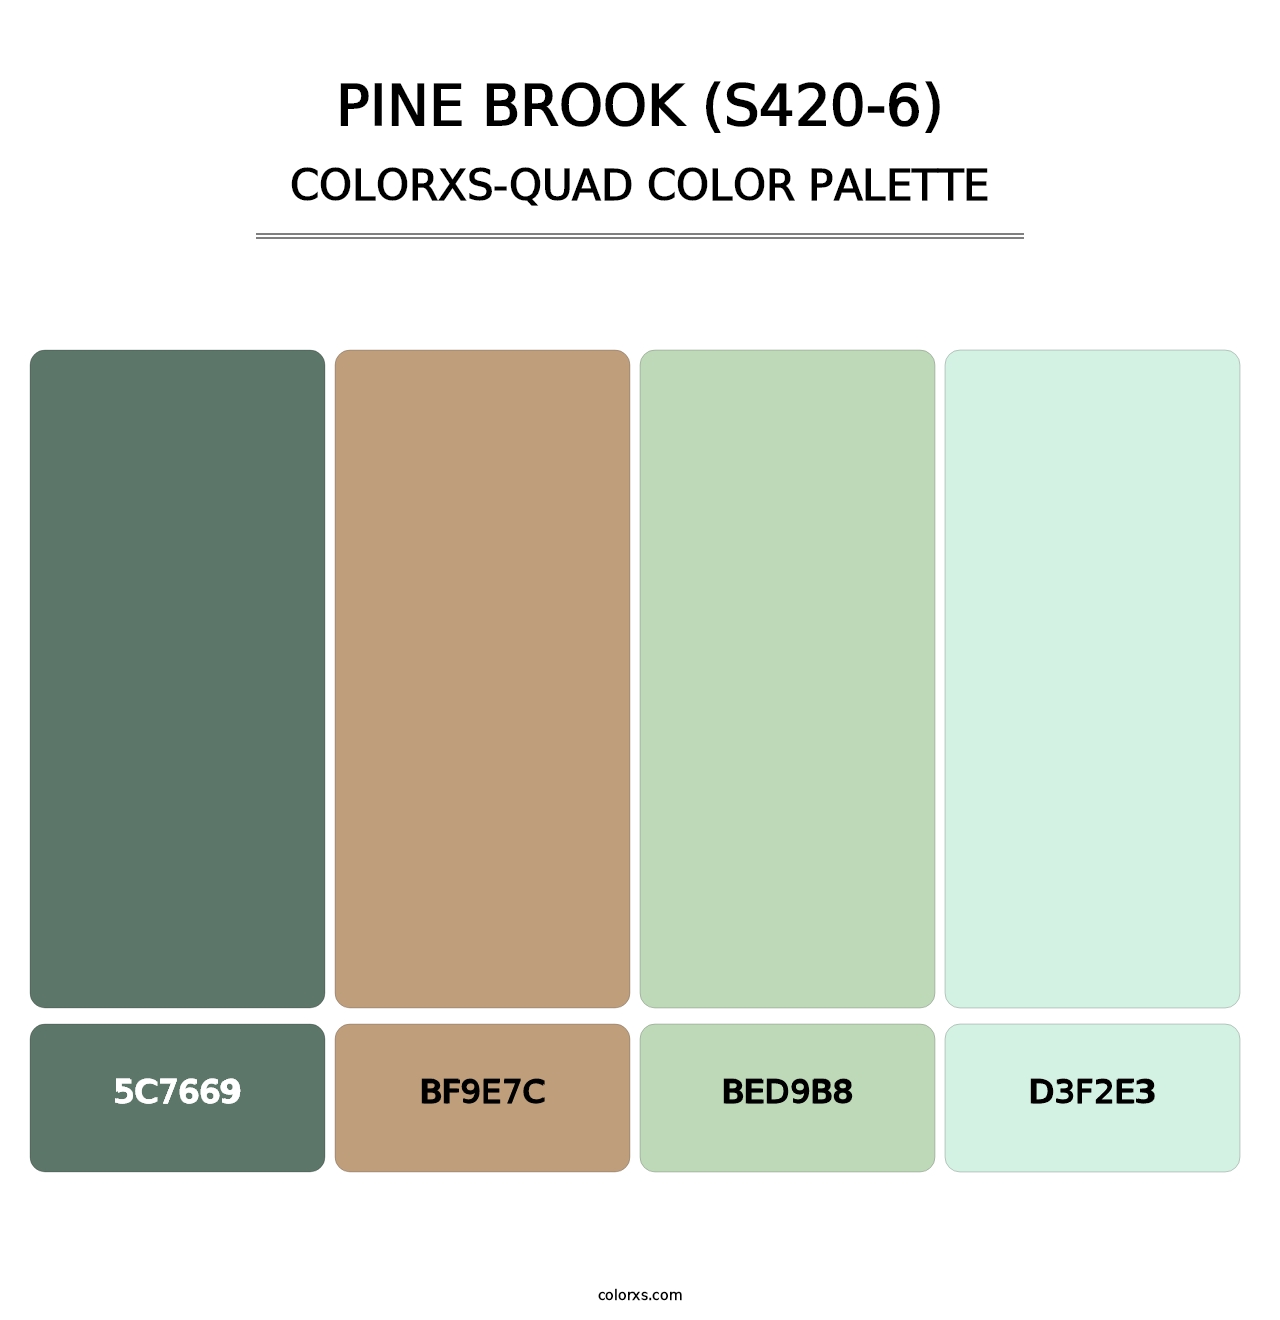 Pine Brook (S420-6) - Colorxs Quad Palette